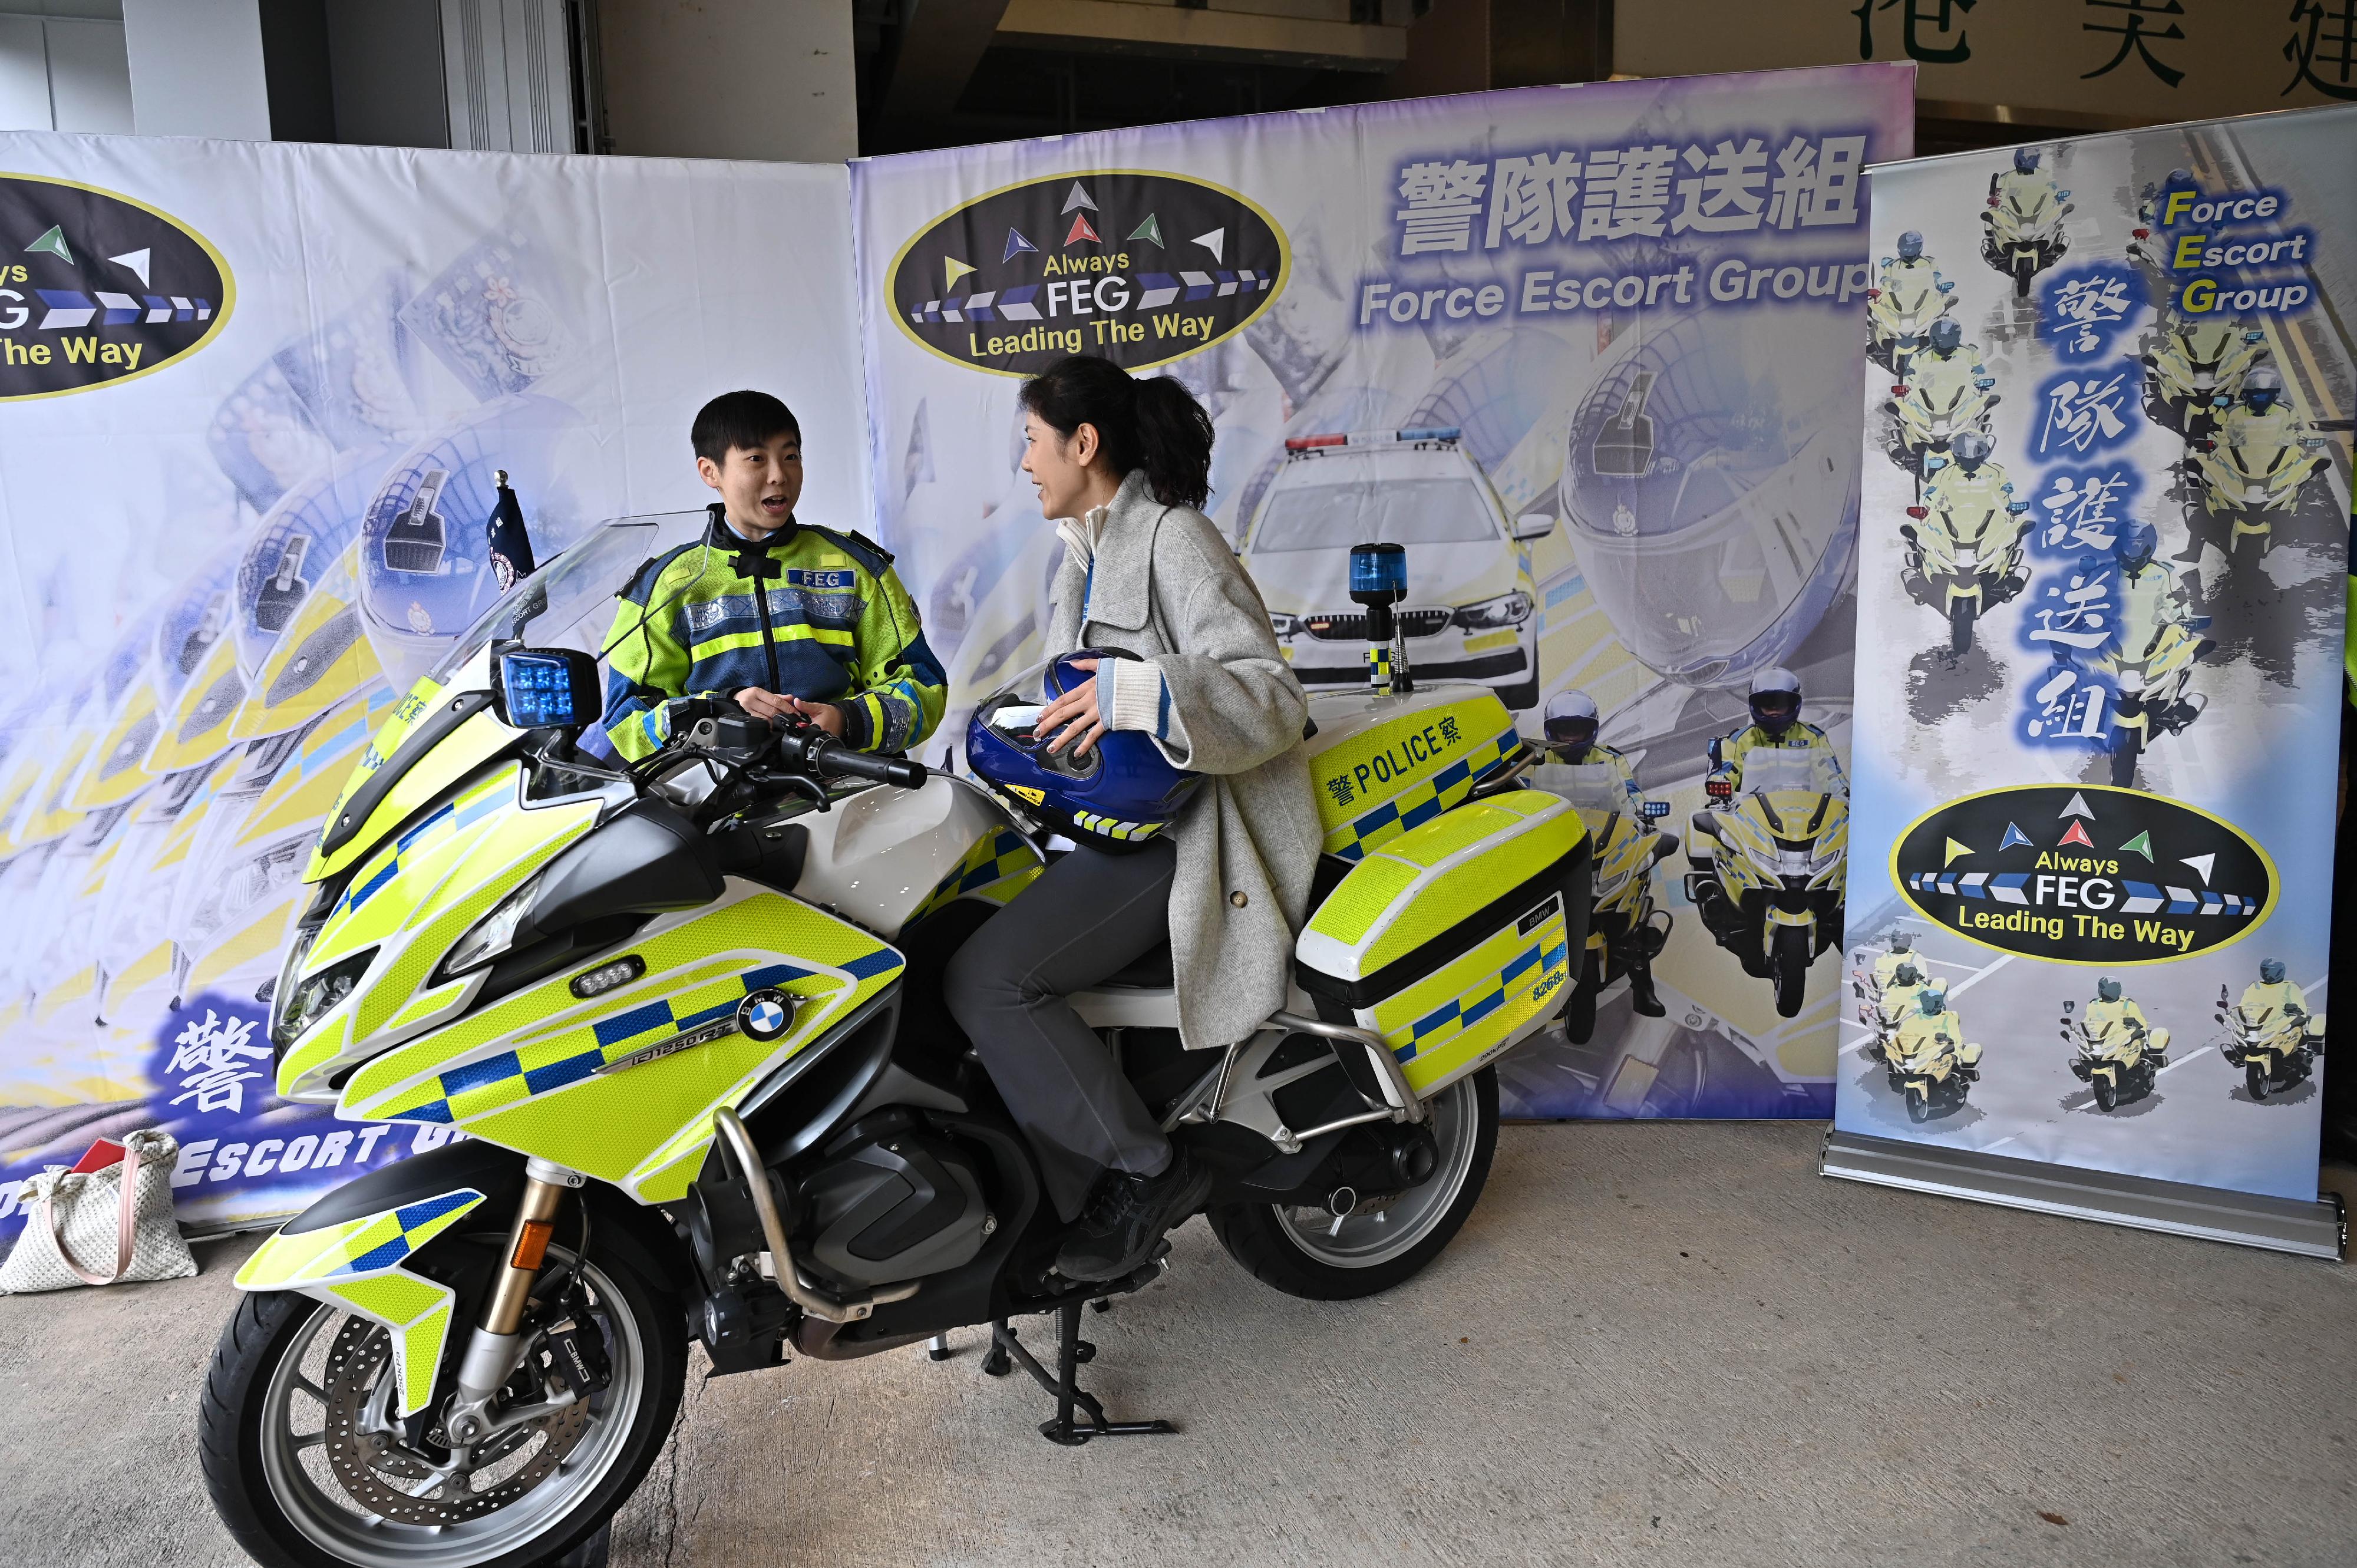 警隊今日（十二月十七日）在香港警察學院舉辦「警察招募‧體驗日」。圖示警隊護送組隊員向參加者介紹其工作及裝備。